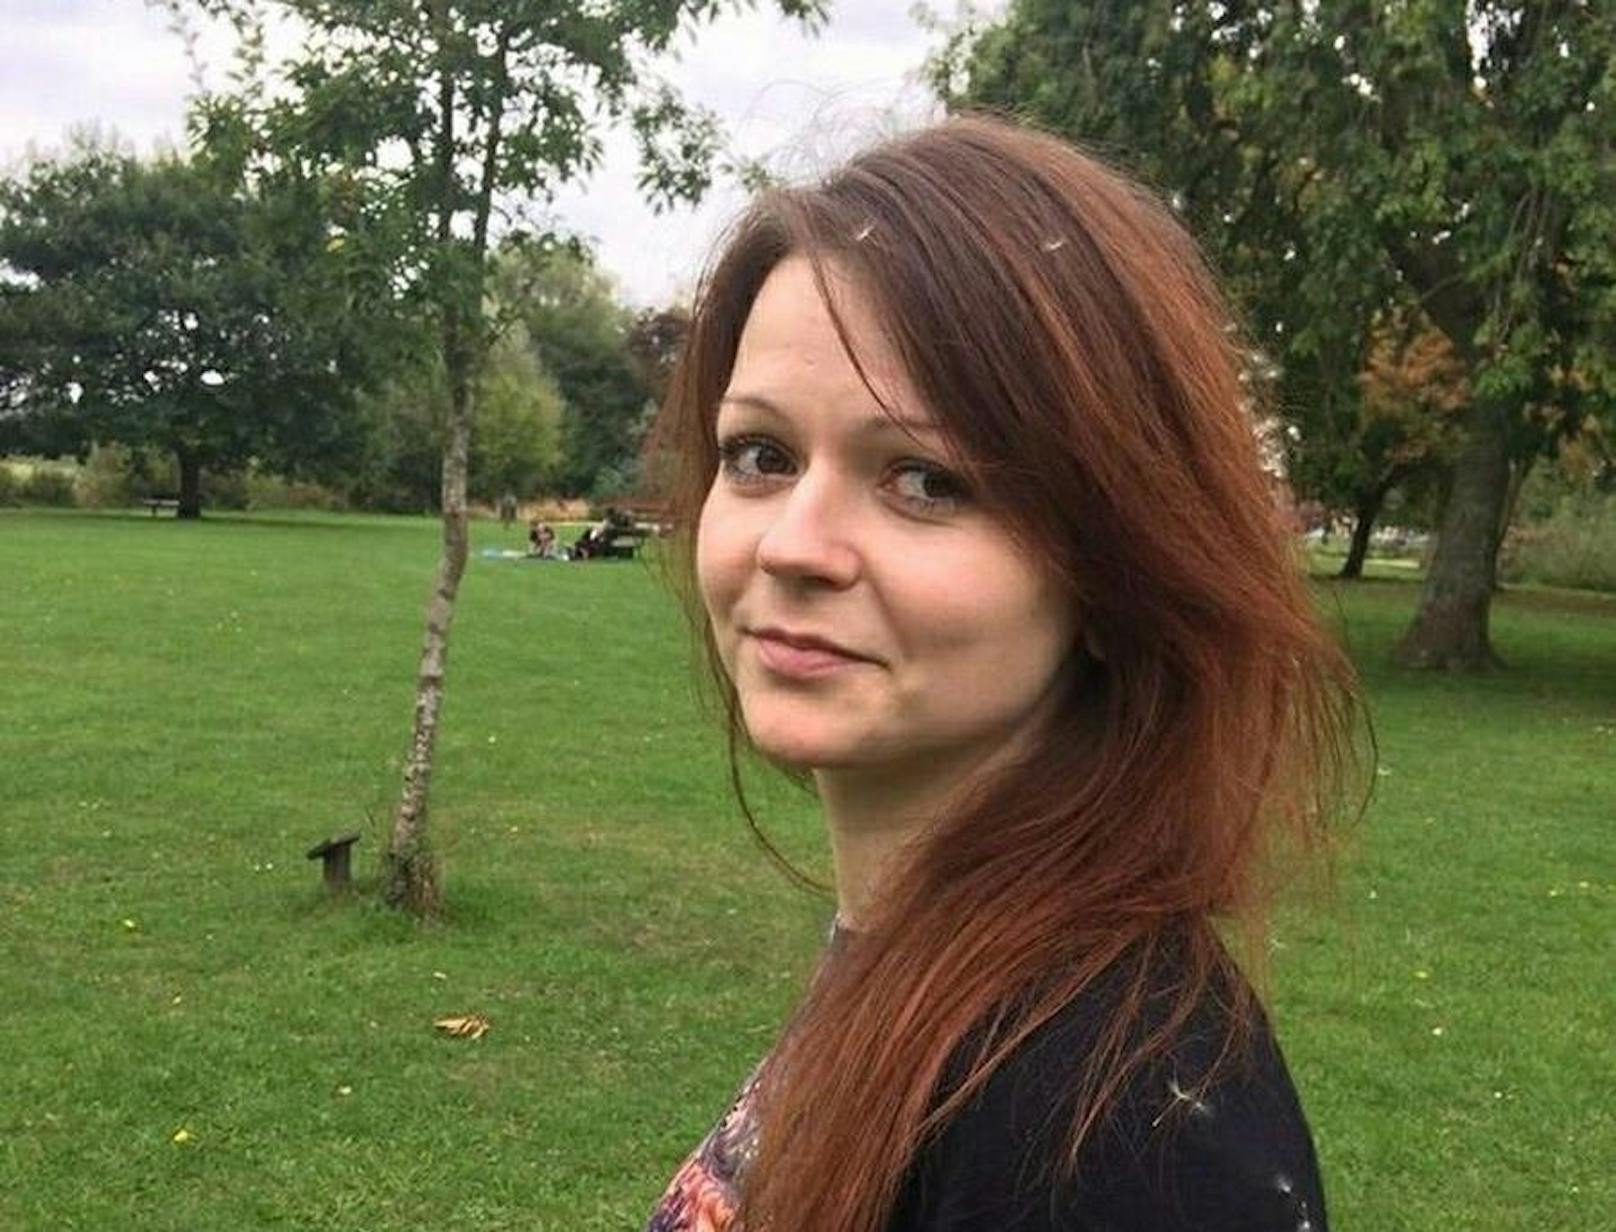 Yulia Skripal, Tochter des Ex-Spions Sergej Skripal, wurde am 4. März zusammen mit ihrem Vater dem Nervengift Nowitschok ausgesetzt. Sie ist nun auf dem Weg der Besserung.